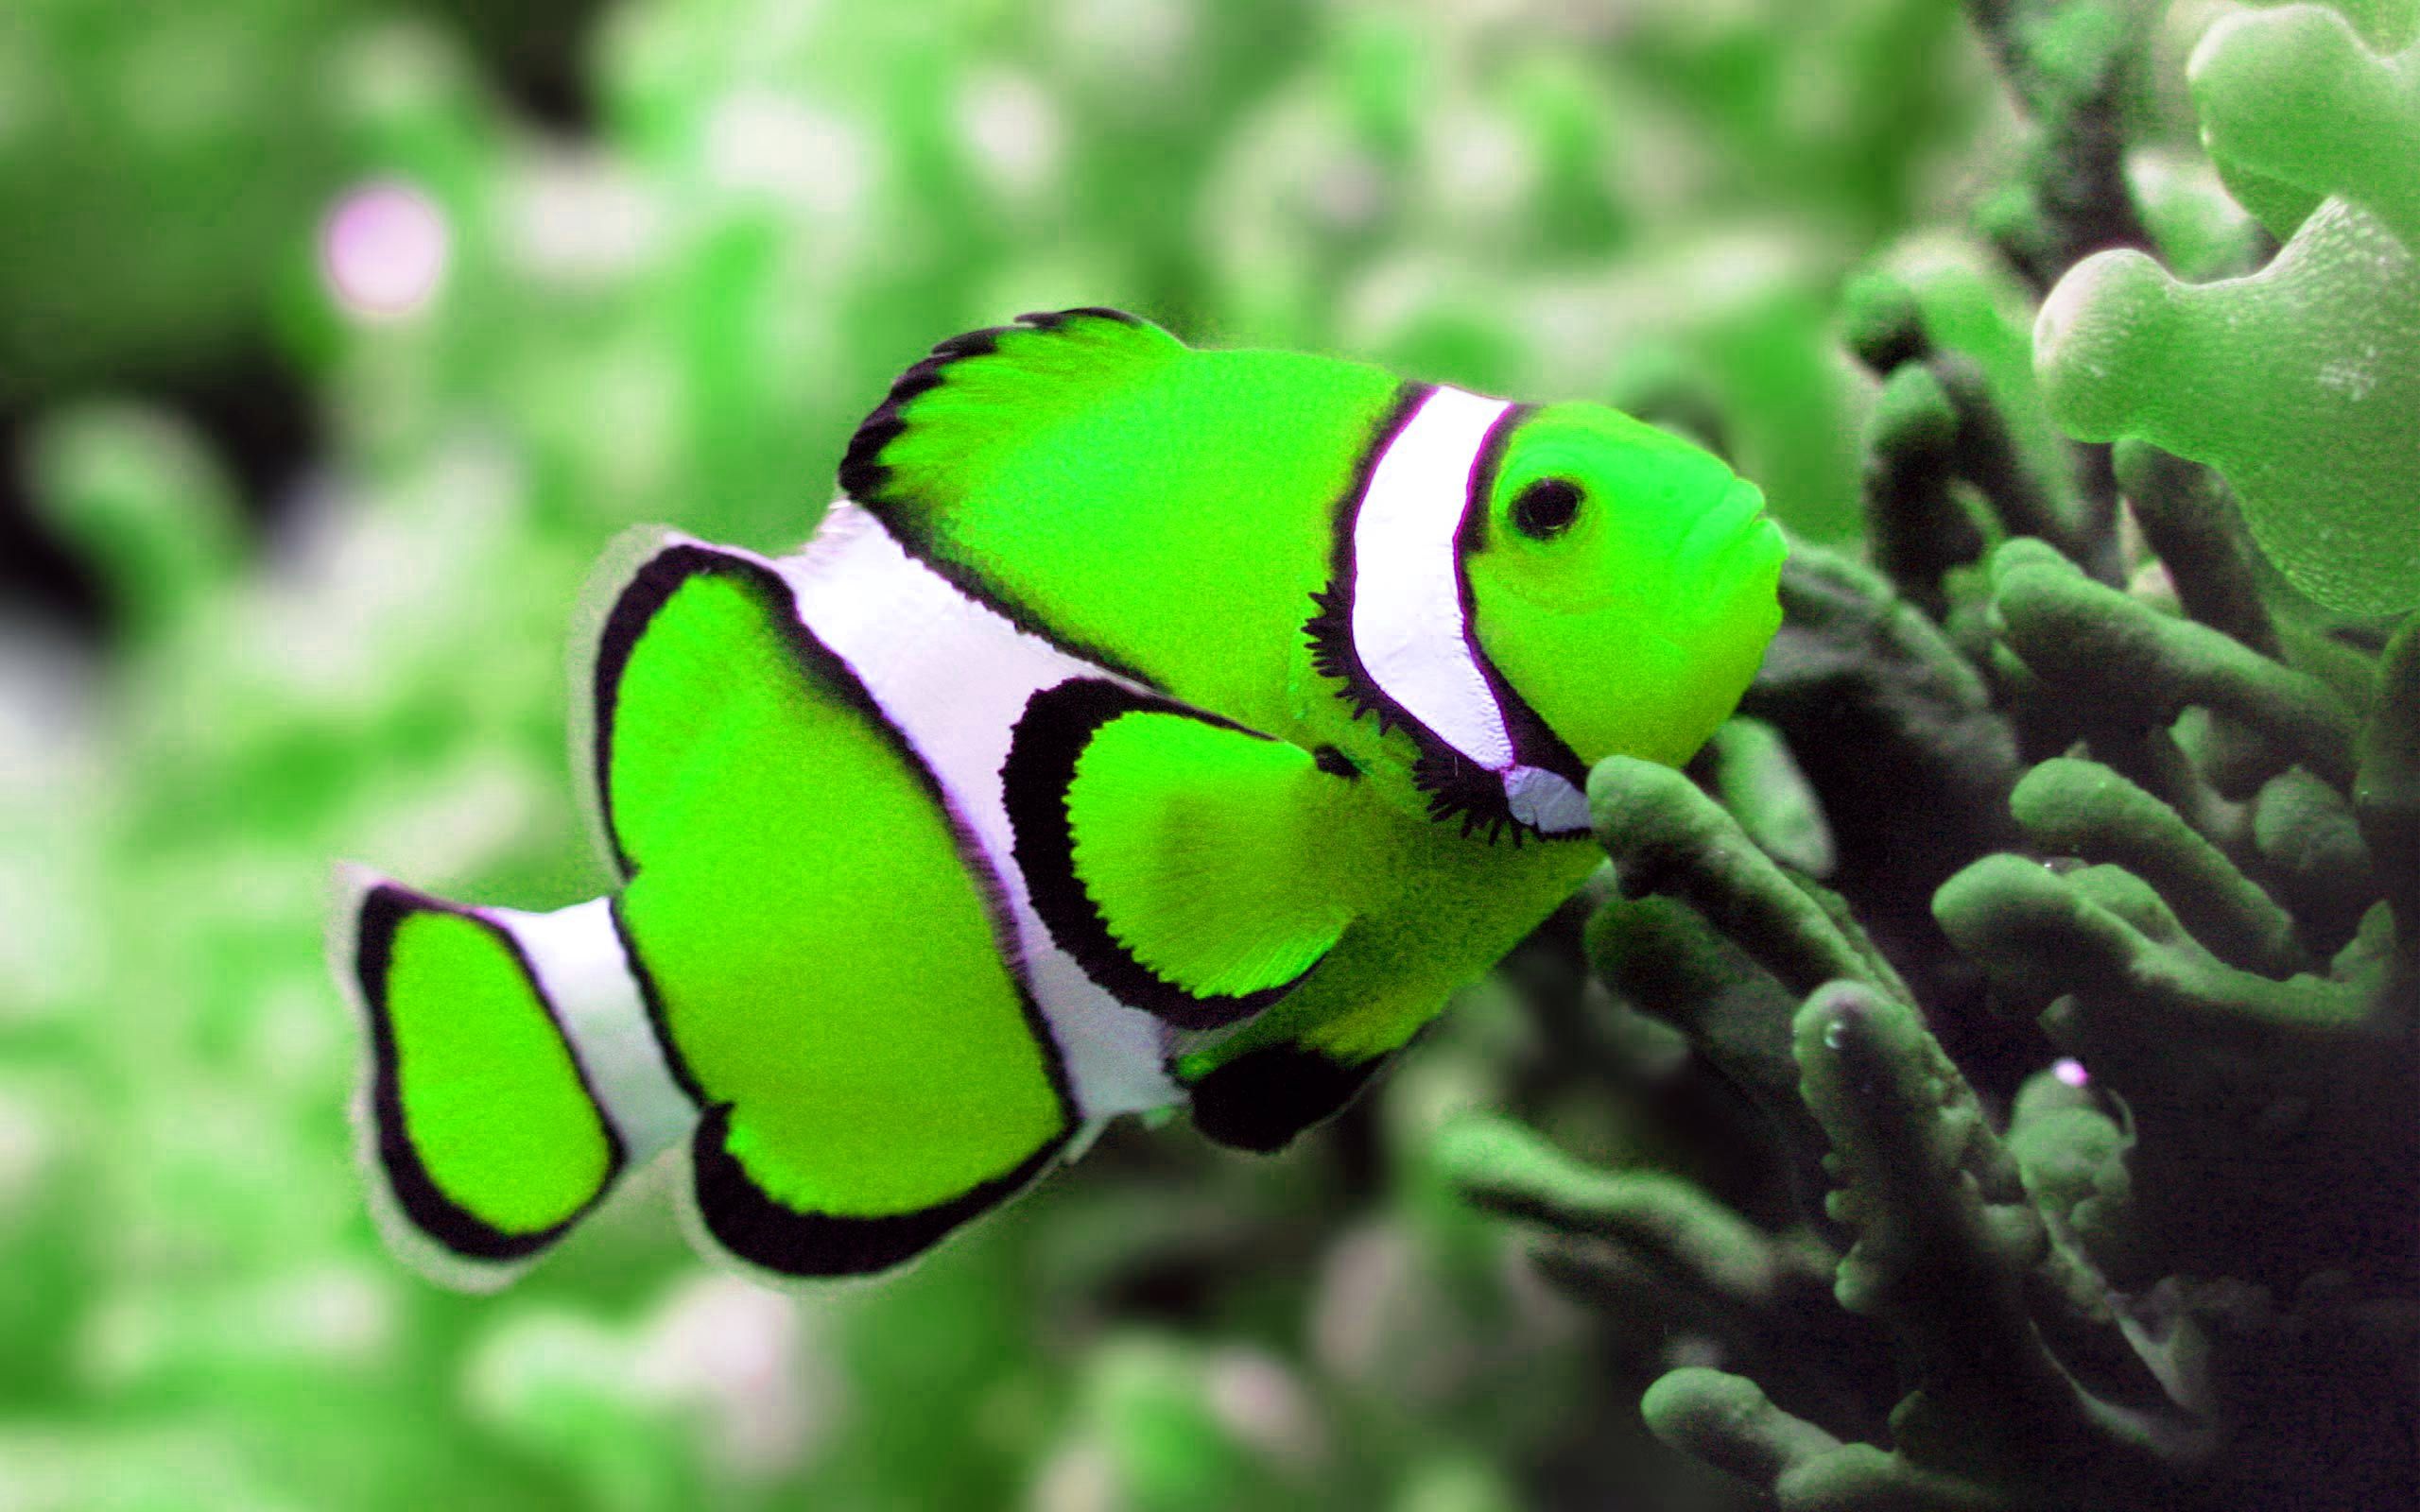 Free photo: Colorful fish, Colorful, Fauna